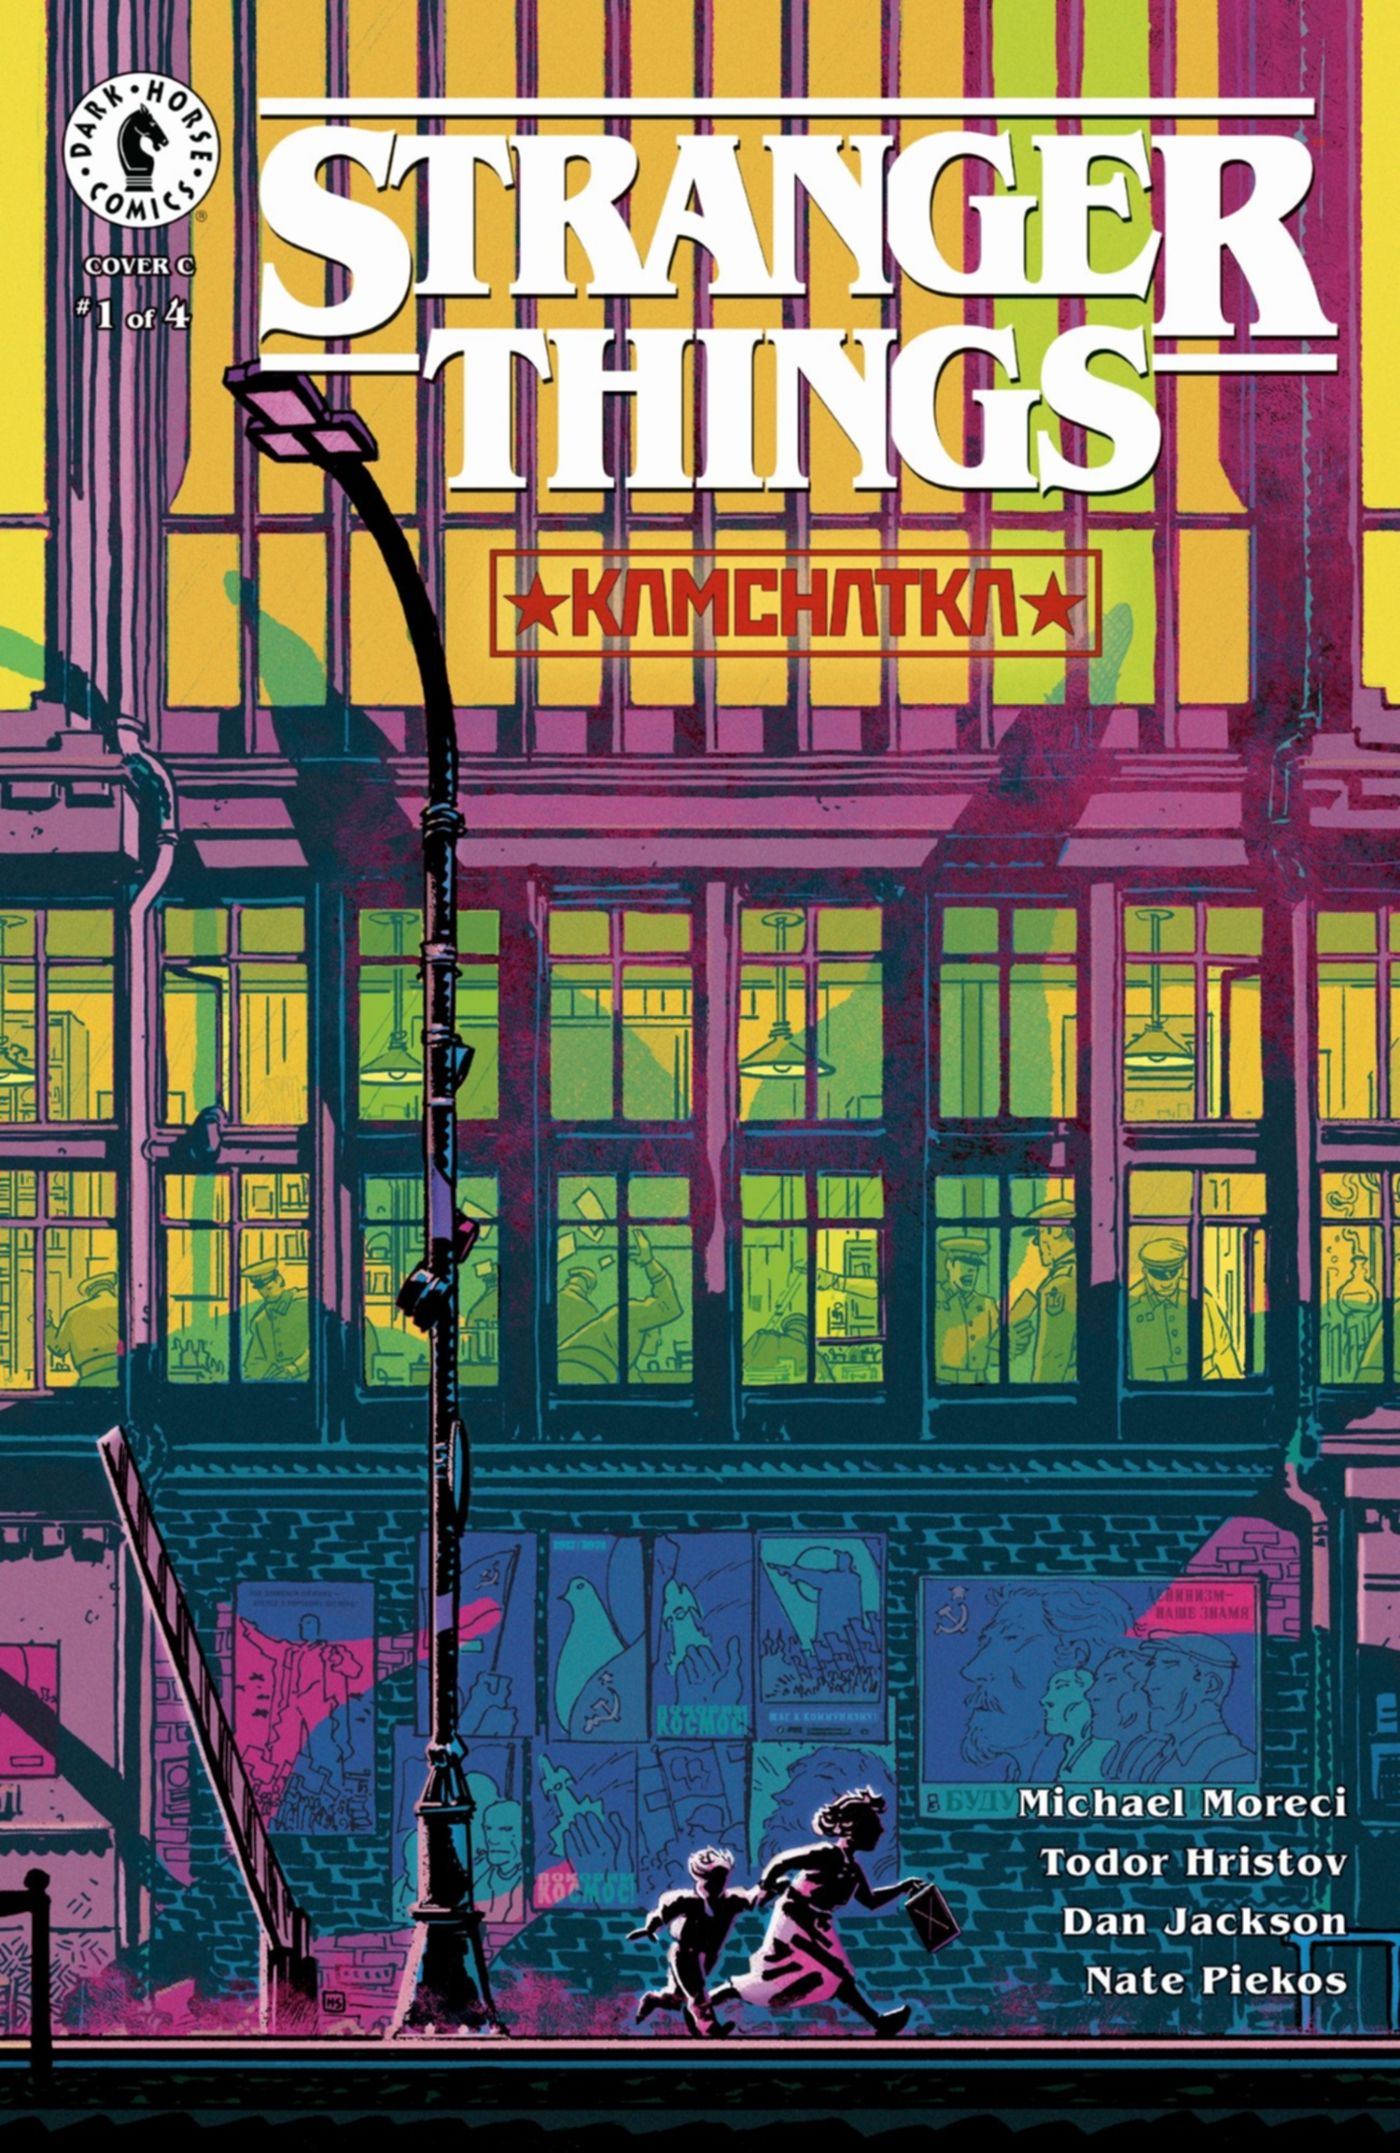 Stranger Things Kamchatka Comic Cover Art 3